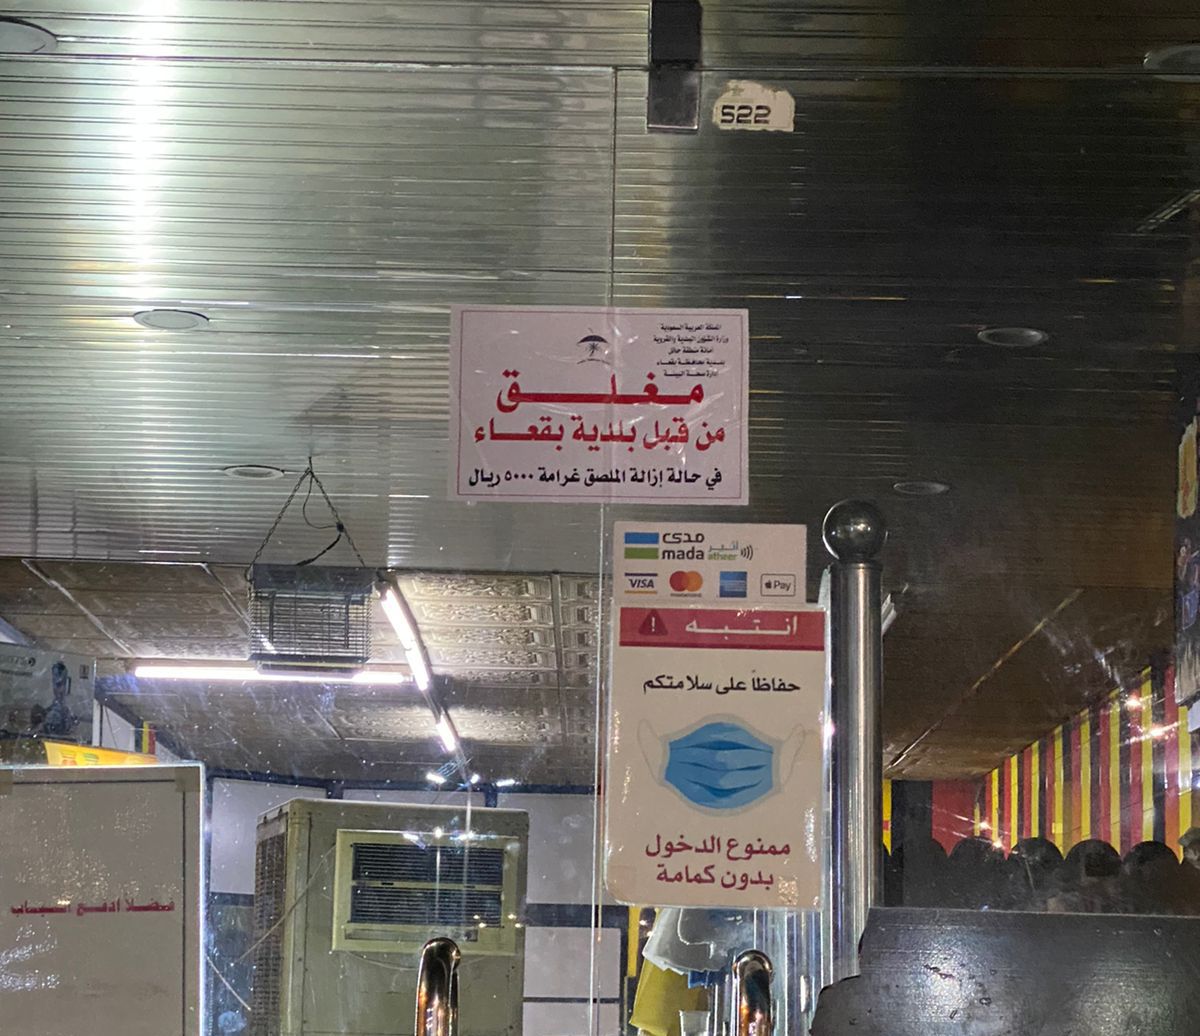 صورة تسمم 51 شخصا بأحد المطاعم في السعودية